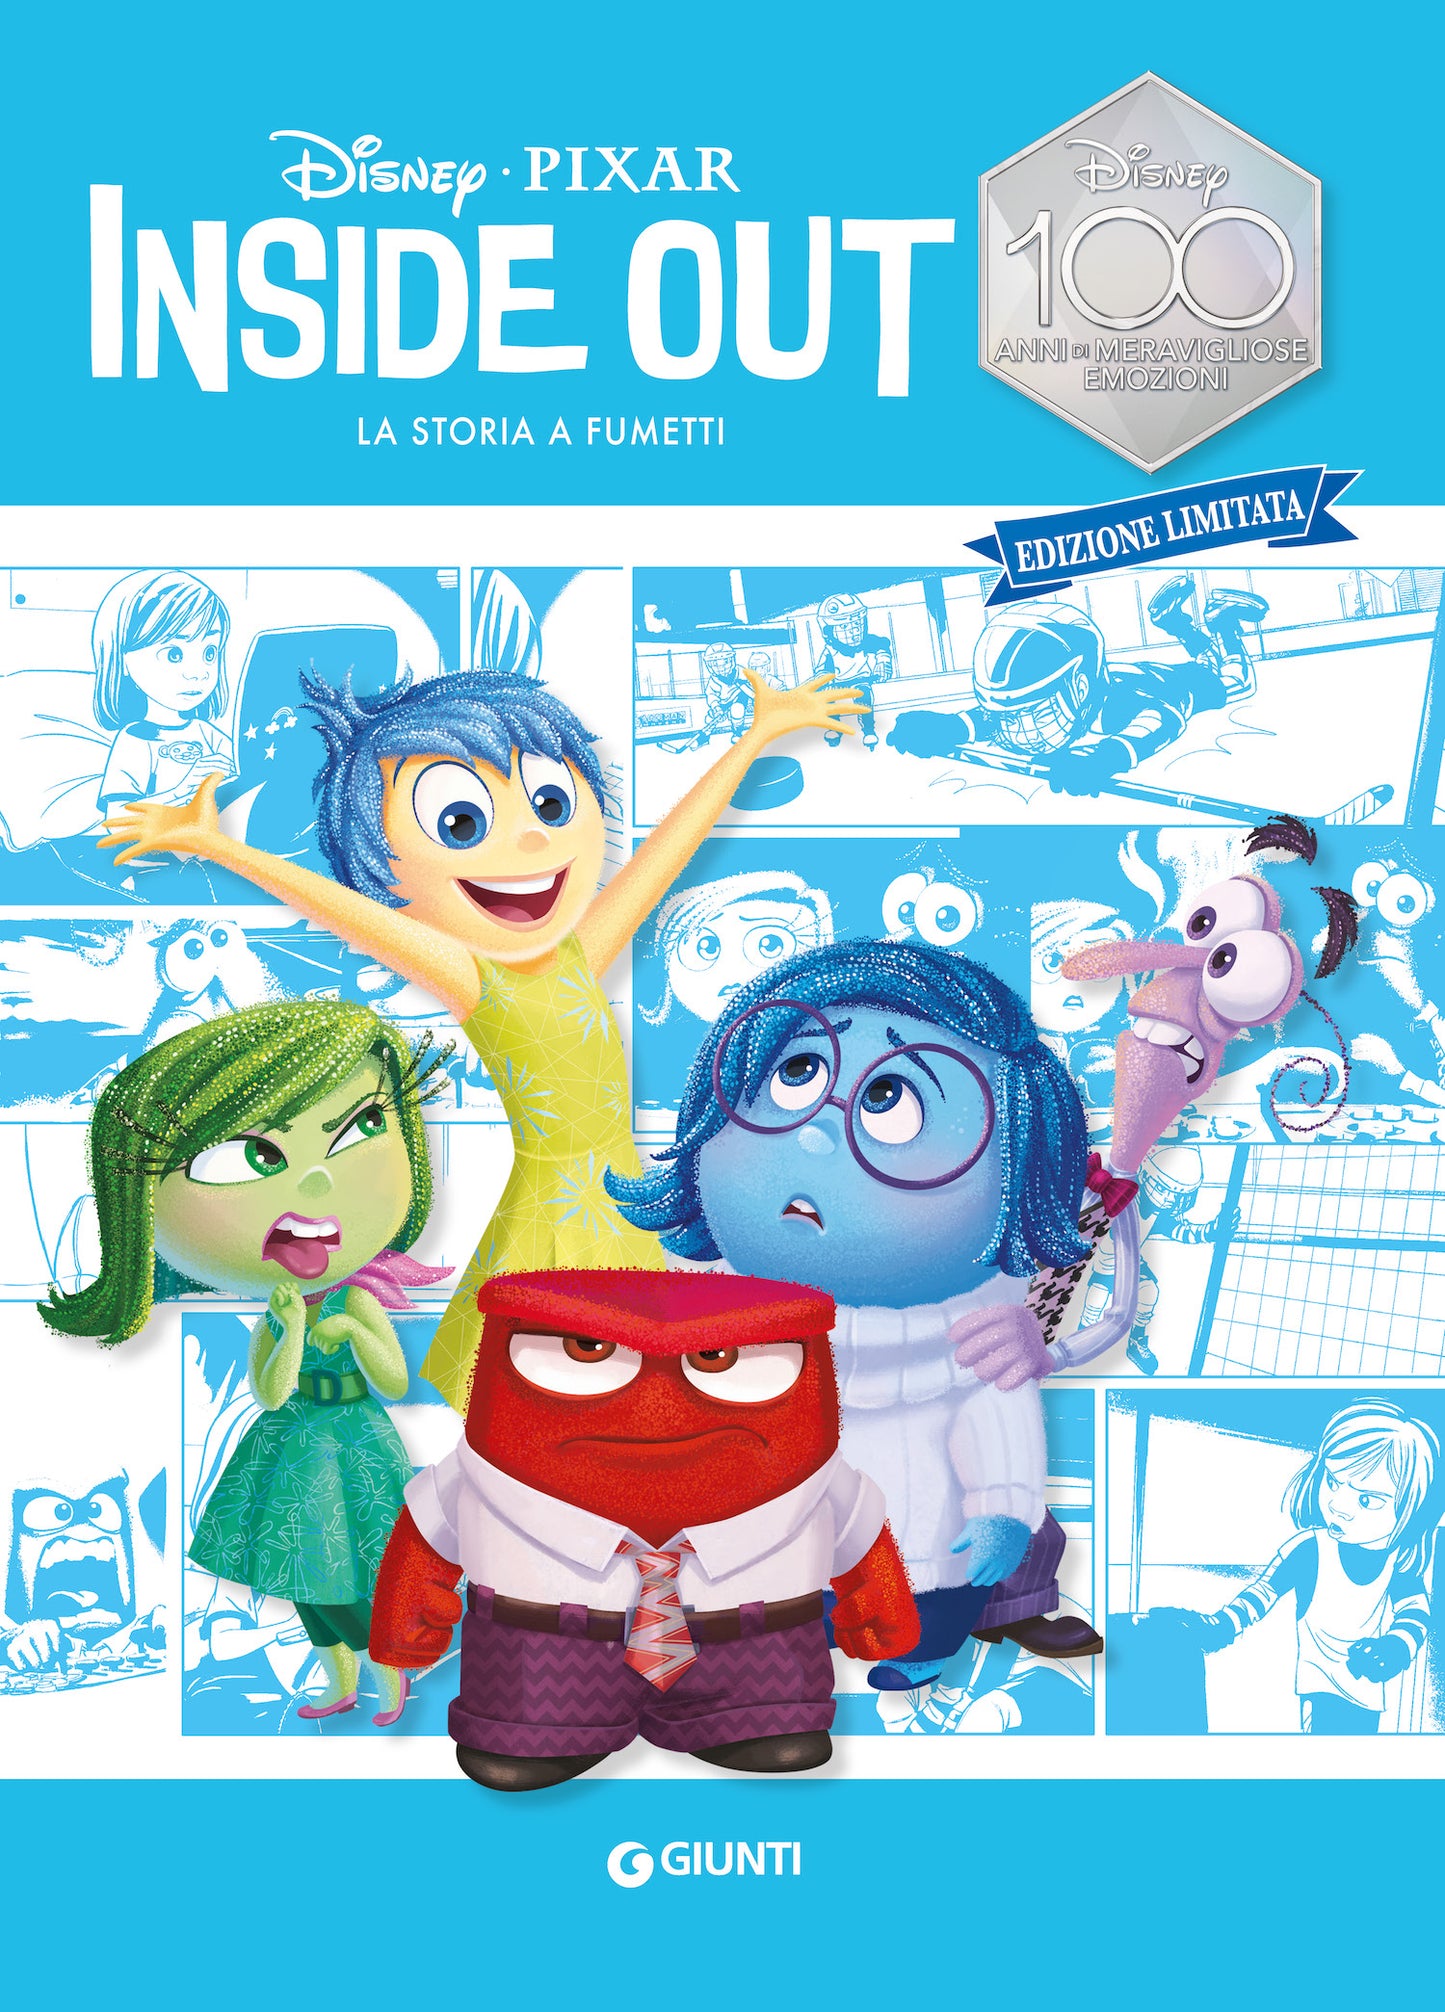 Inside out La storia a fumetti Edizione limitata::Disney 100 Anni di meravigliose emozioni